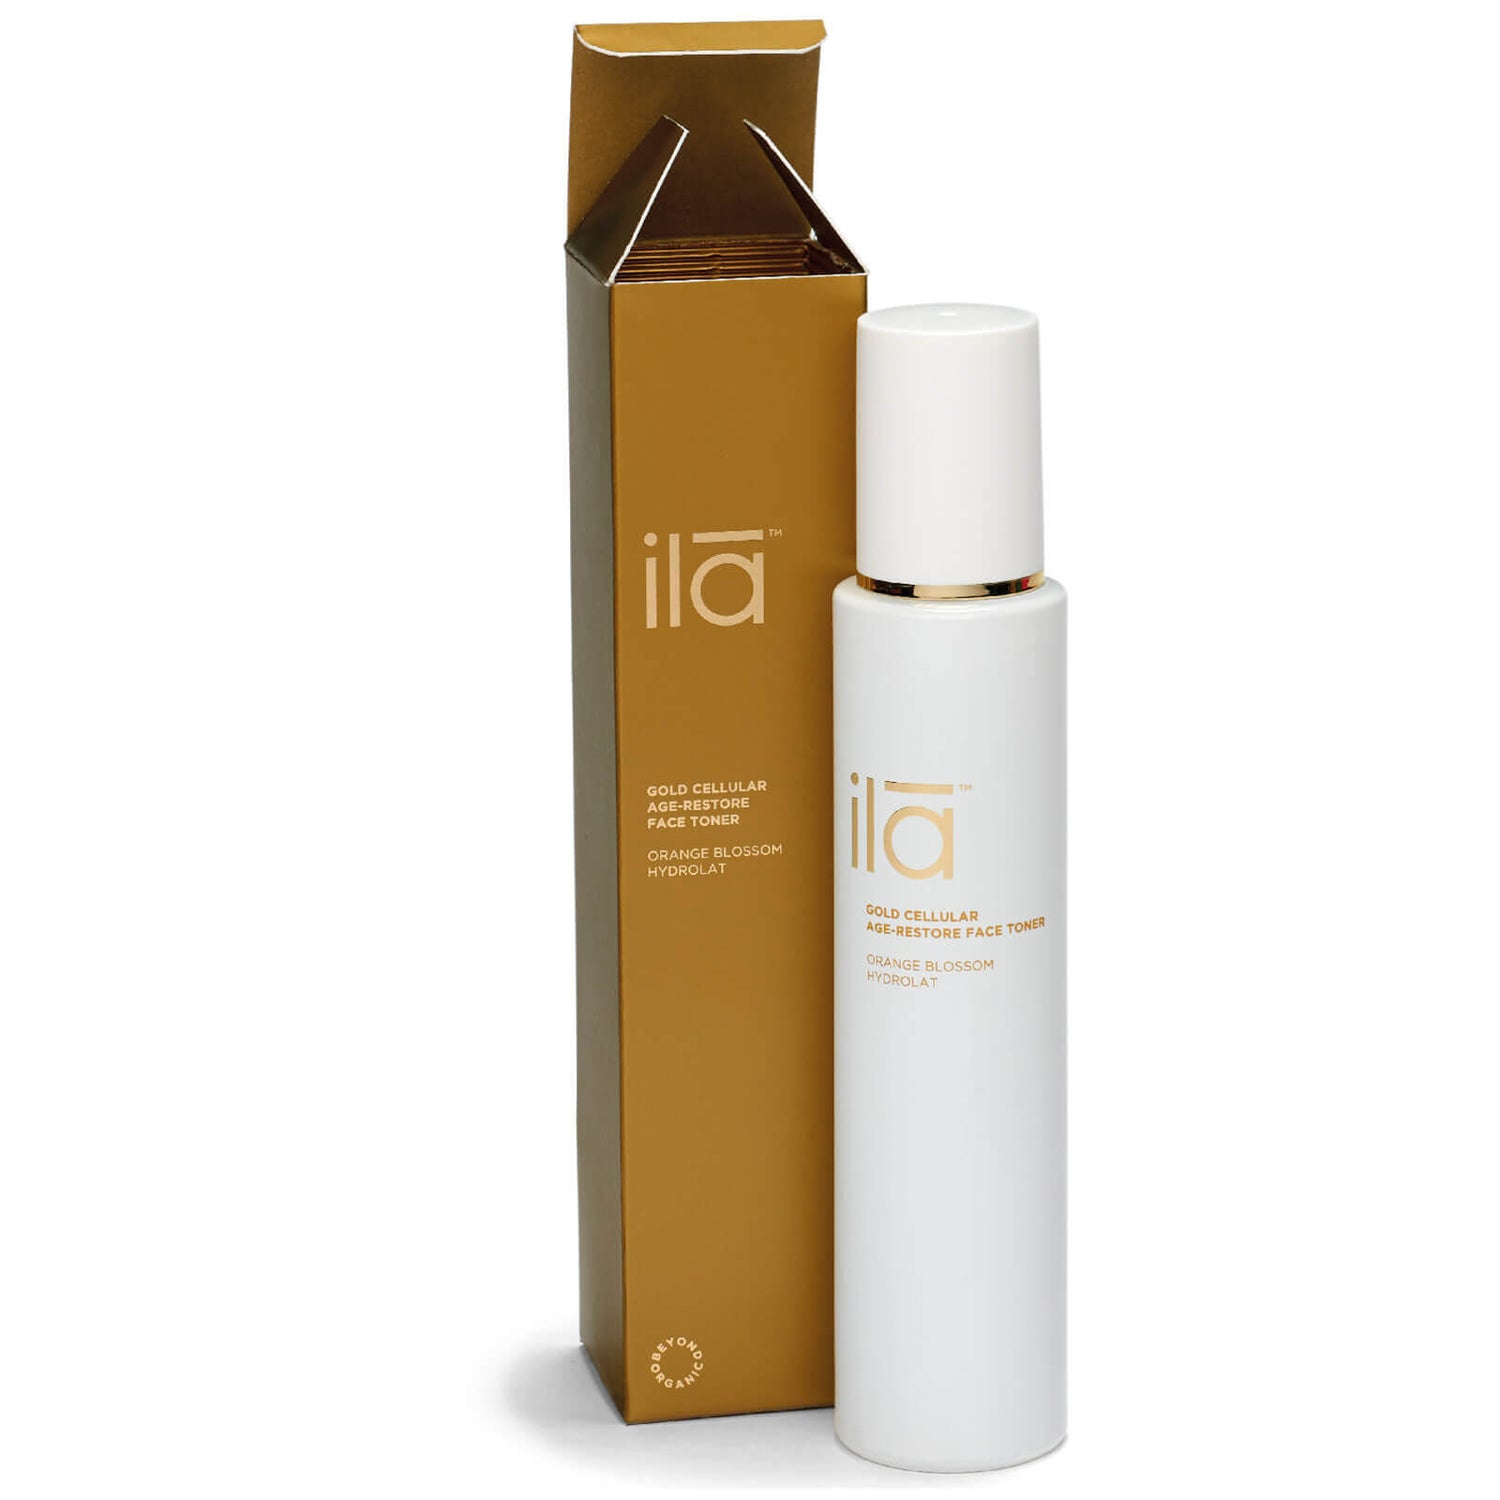 Ila-Spa Gold Cellular Age-Restore Face Toner 100ml